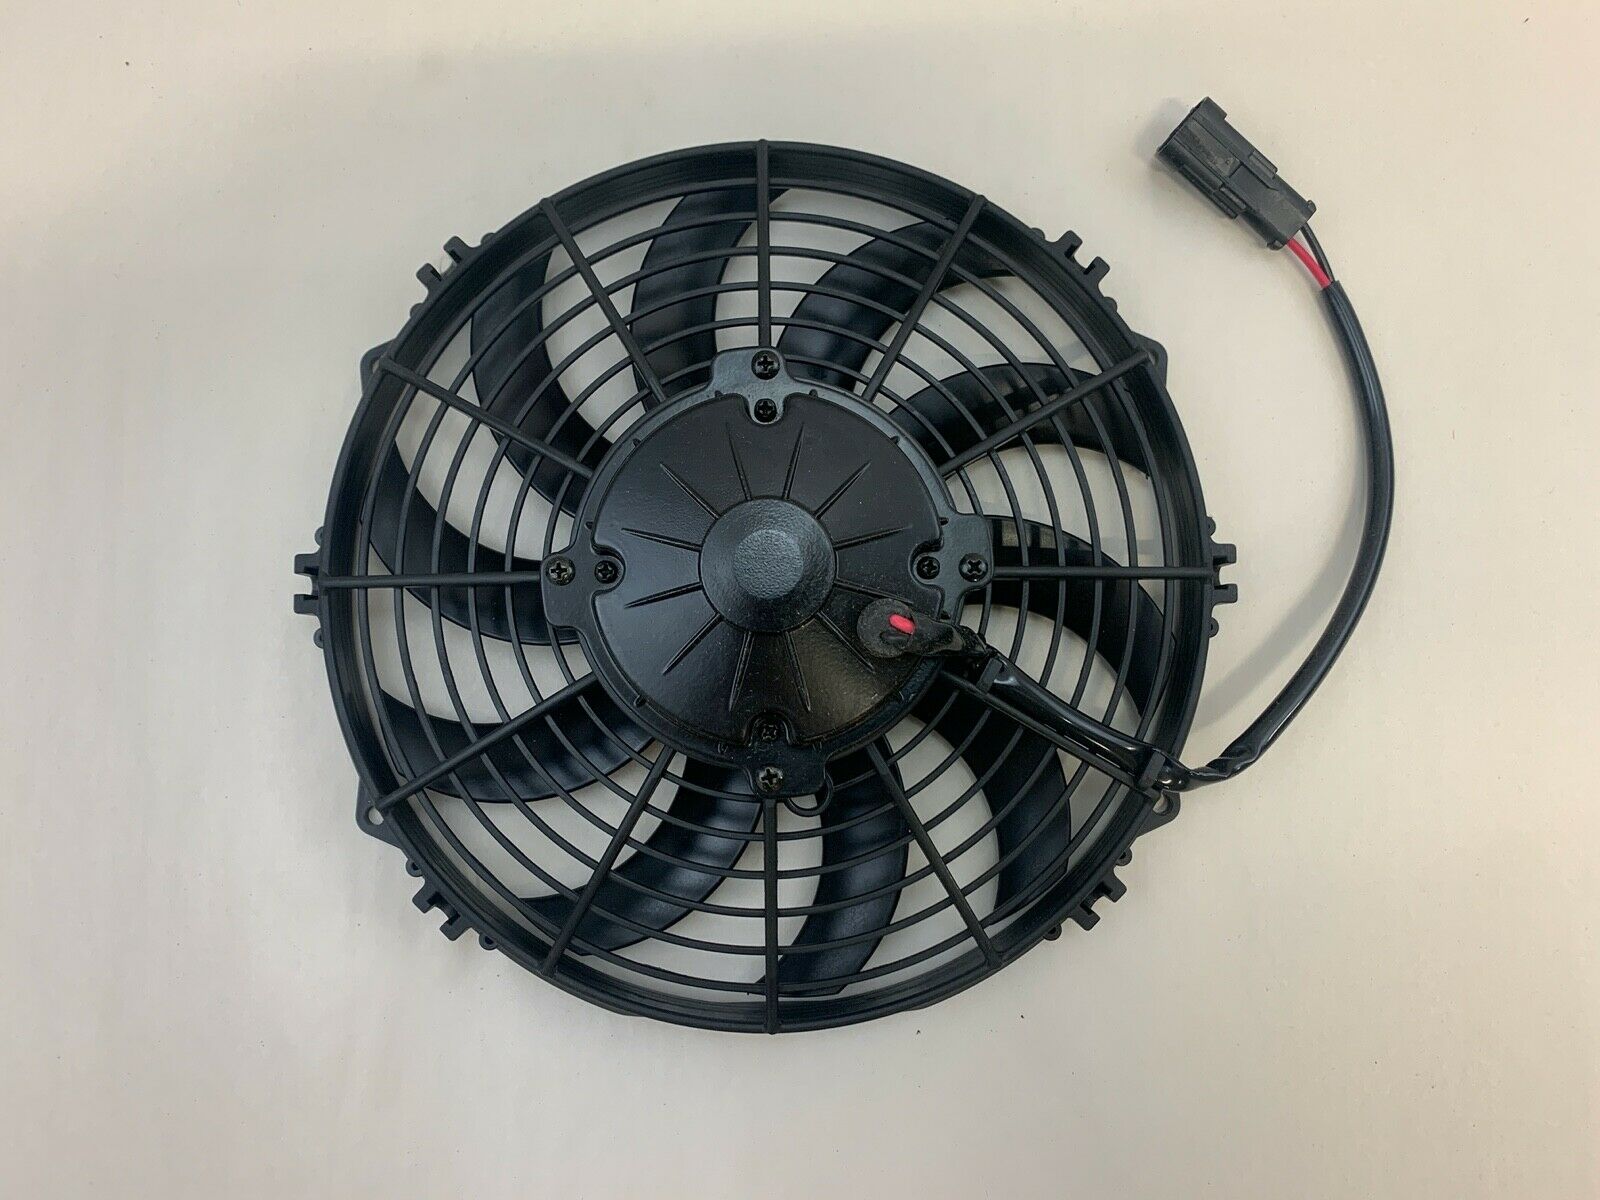 Radiator Fan For Thermo King Tri-pac Apu 78-1535, Precooler 781535 Tripac Tk 10"